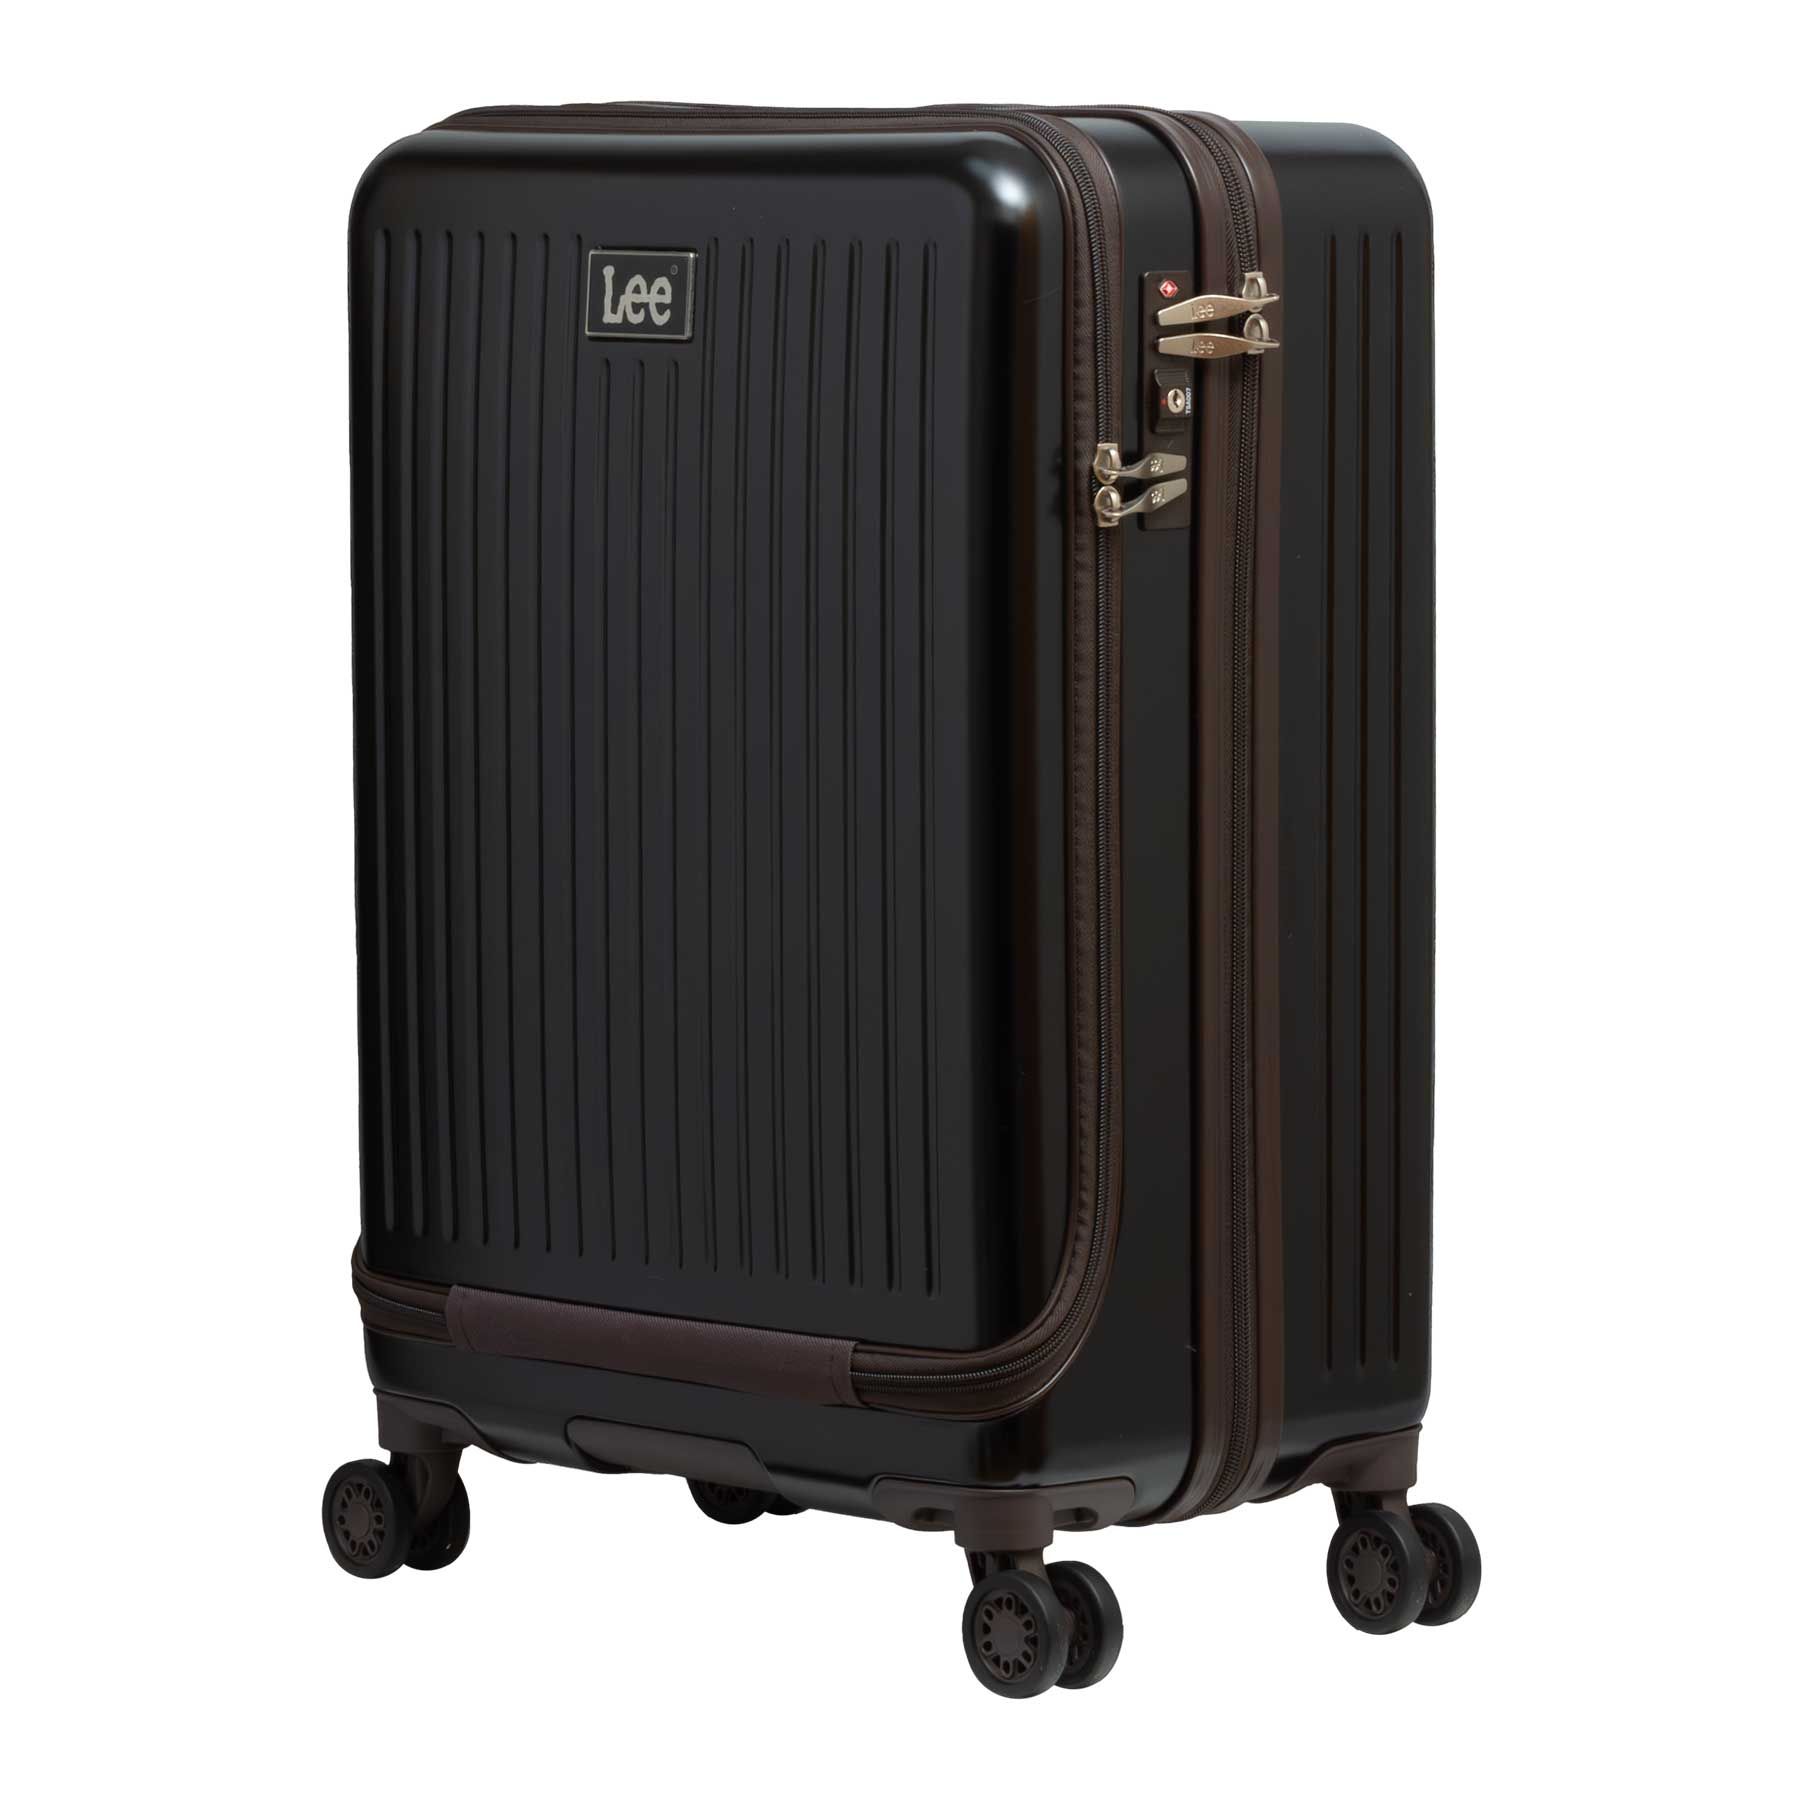 スーツケース Mサイズ 53L Lee リー 3~4泊 フロントオープン キャリー 